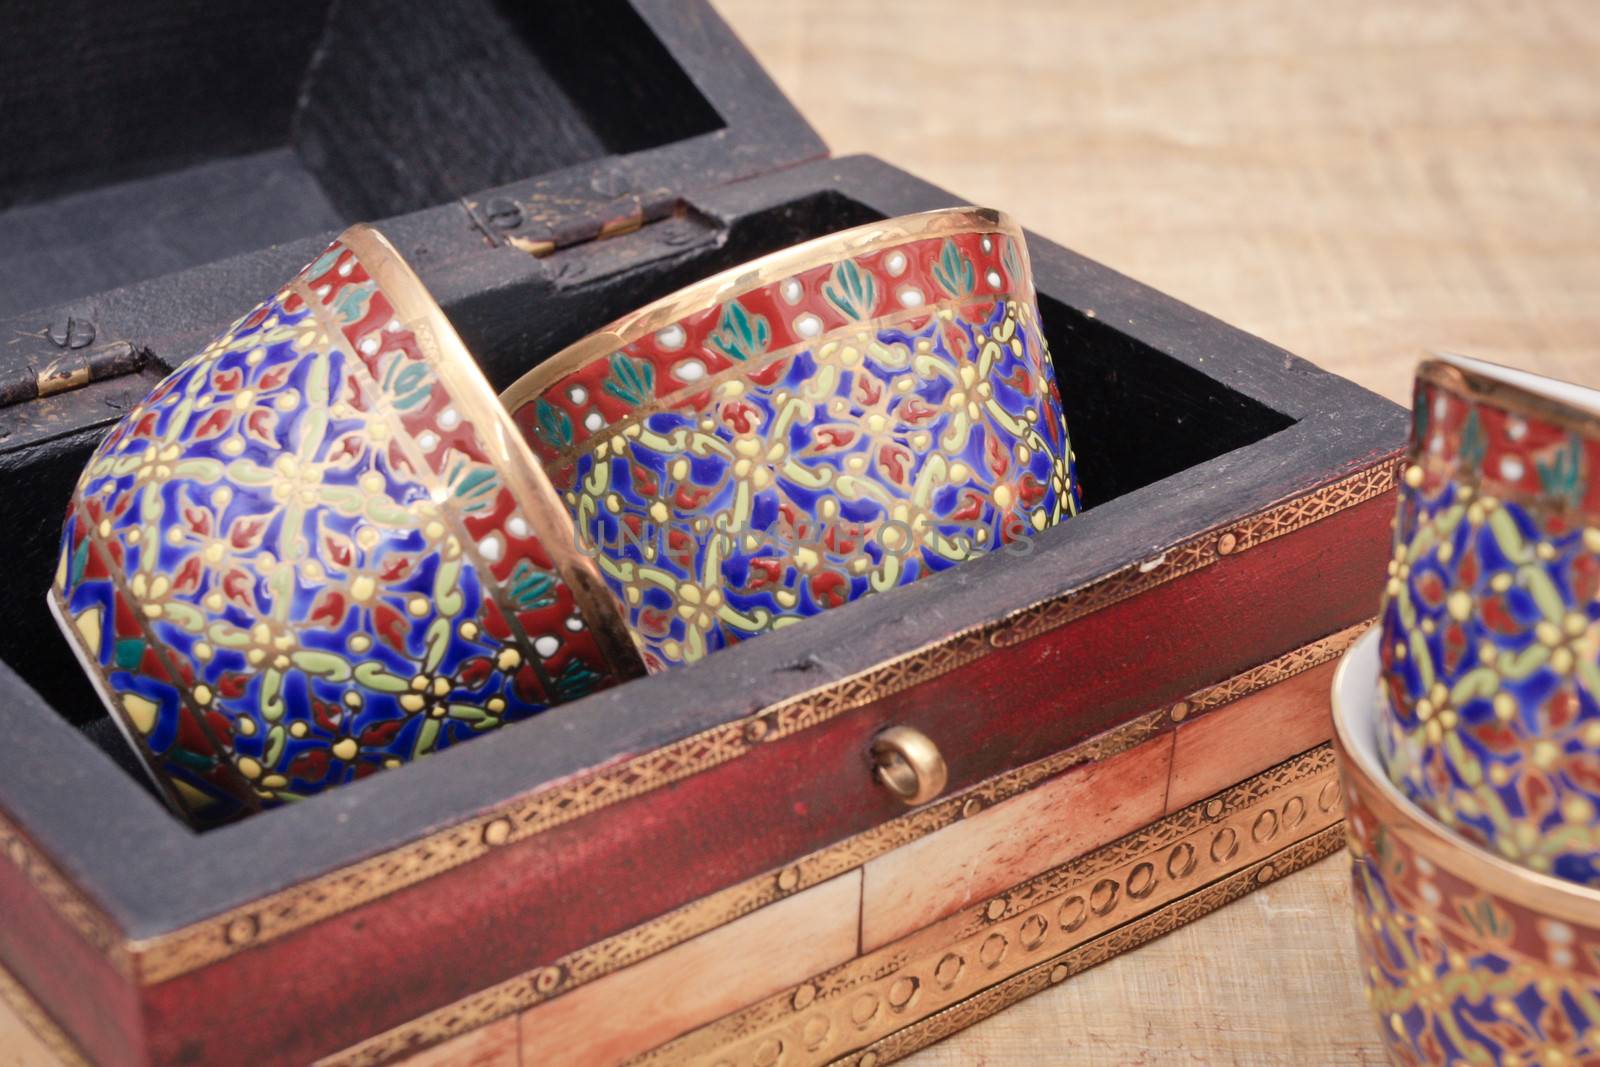 Arabian teacups by trgowanlock